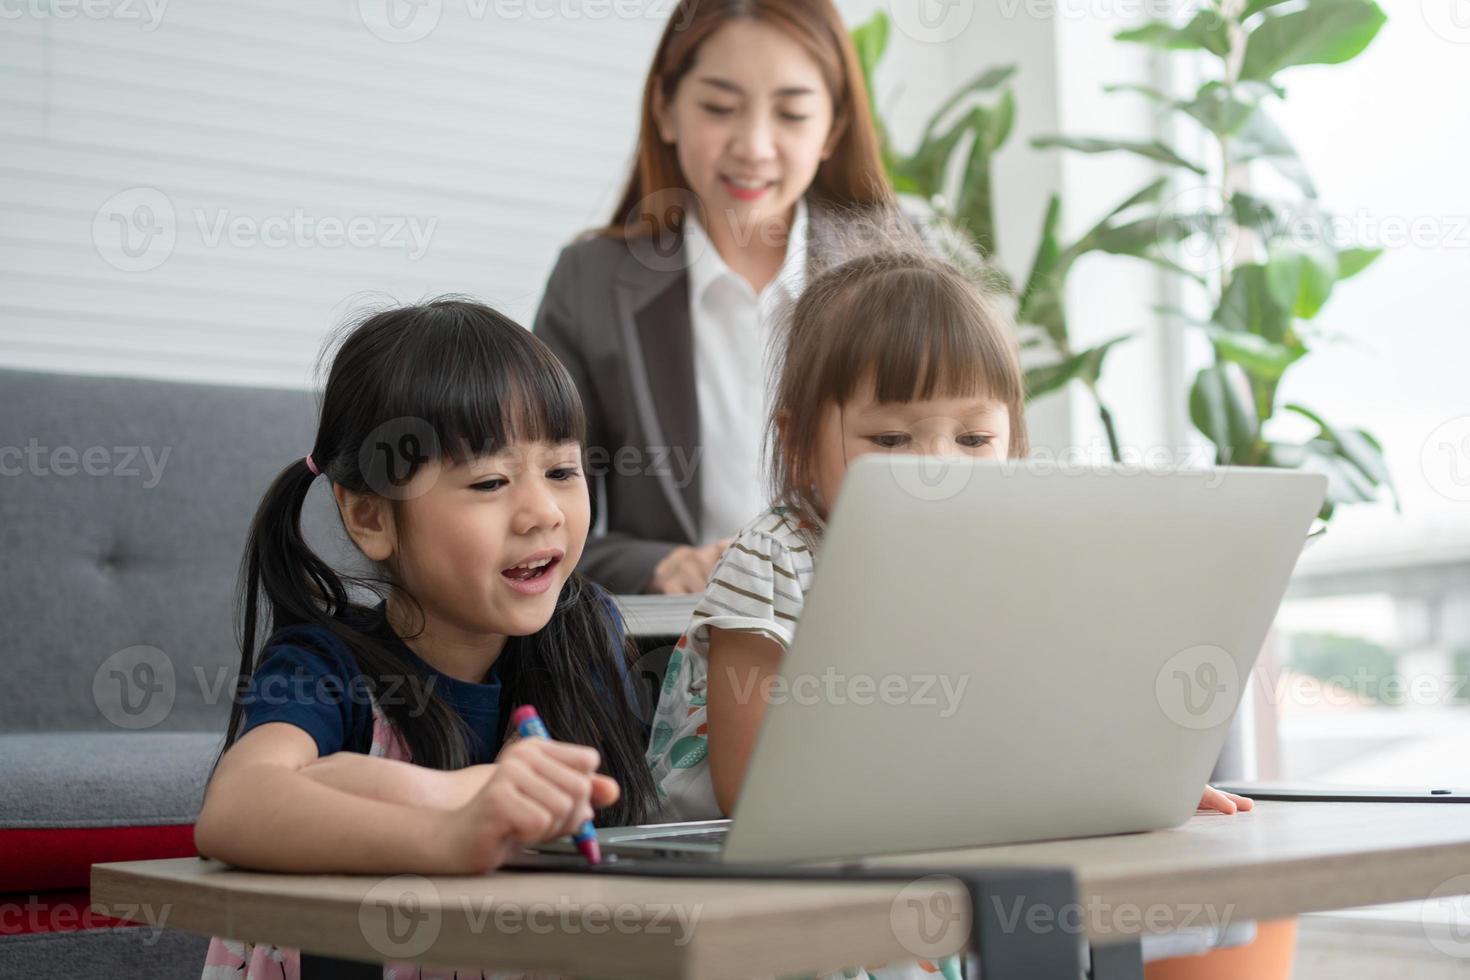 aziatische moeder met haar twee kleinkinderen die plezier hebben en online onderwijsspellen spelen met een digitale computerlaptop thuis in de woonkamer. concept van online onderwijs en zorg van ouders. foto